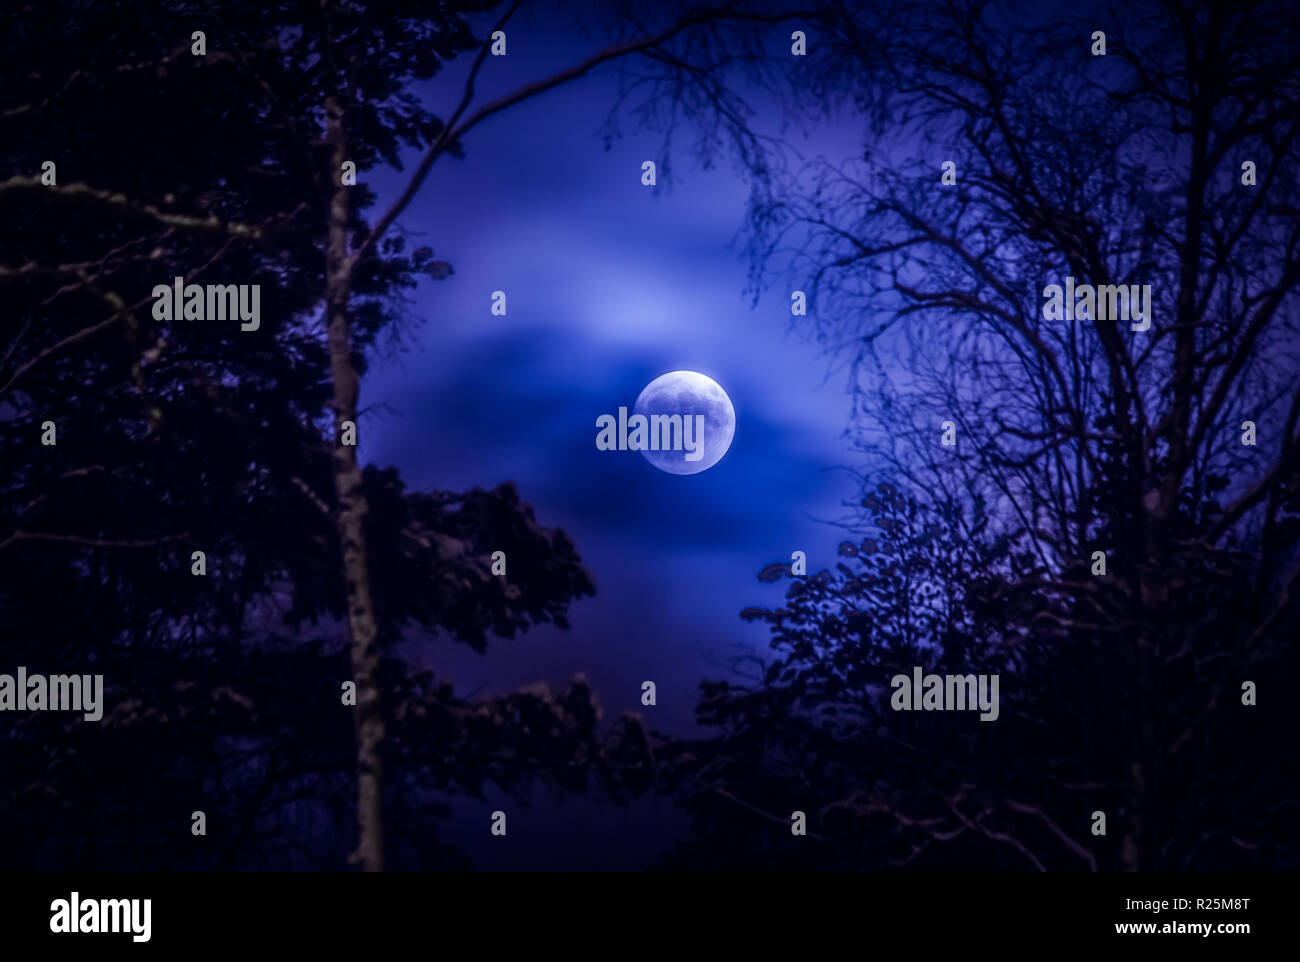 Notte d'inverno luna piena immagini e fotografie stock ad alta risoluzione  - Pagina 2 - Alamy